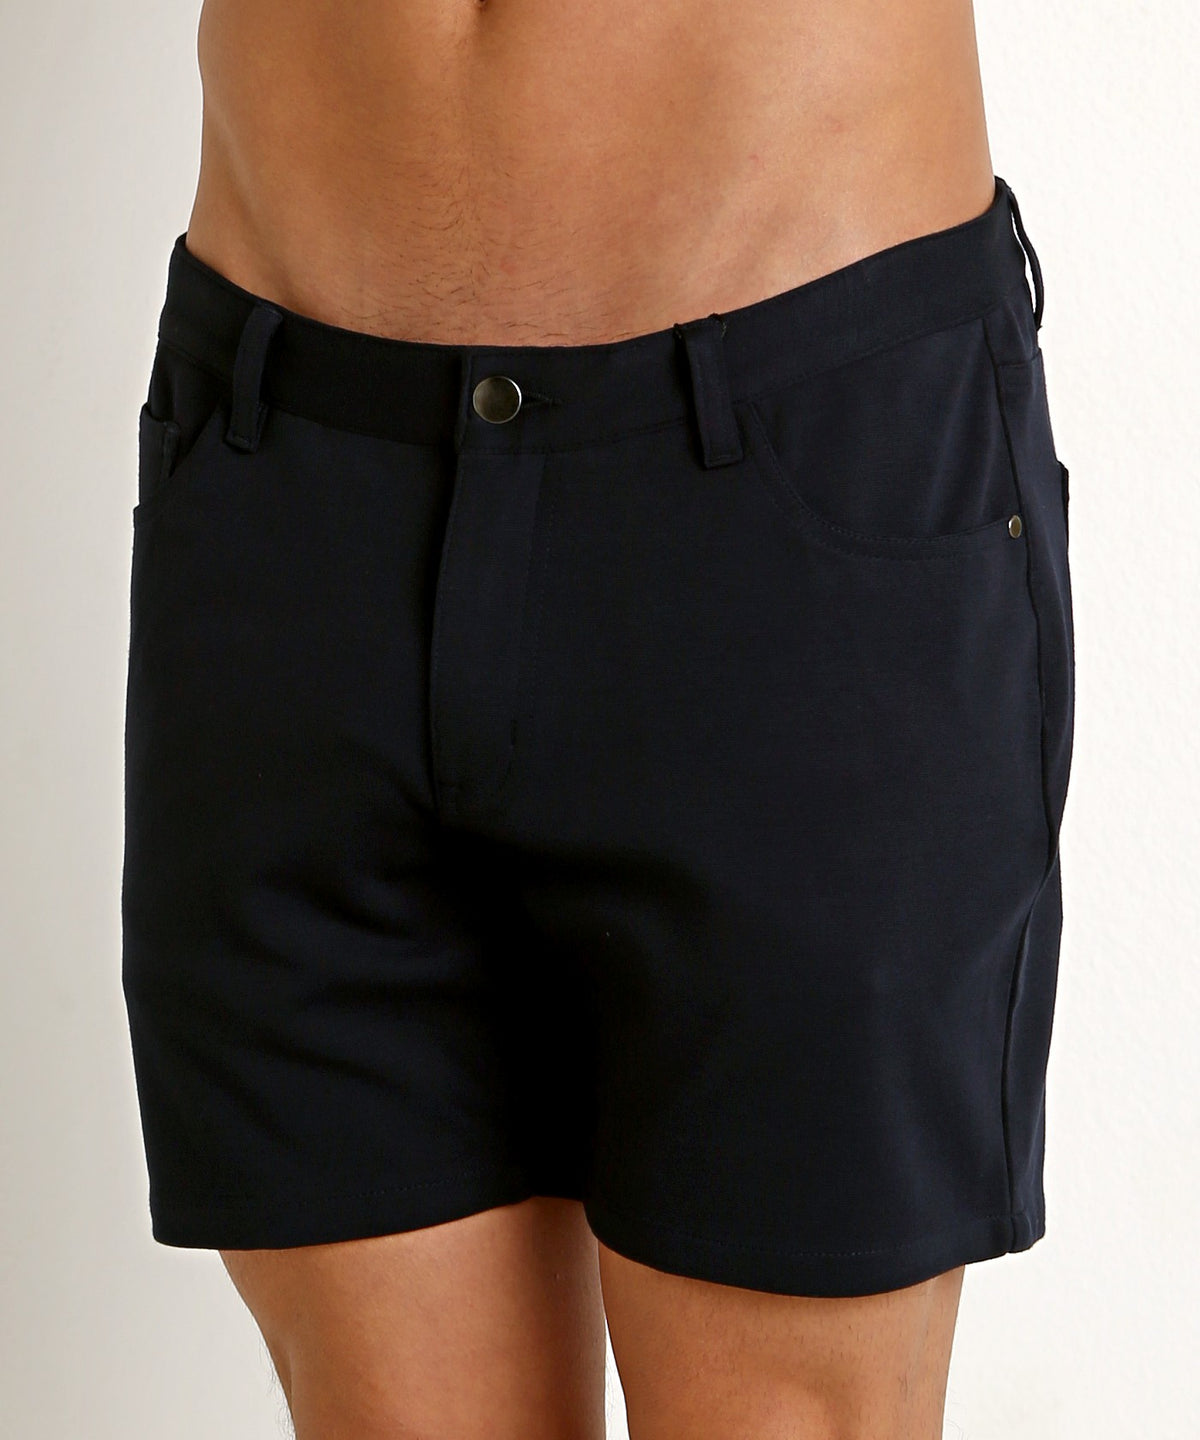 Stretch Knit Shorts (5" inseam) (Navy)